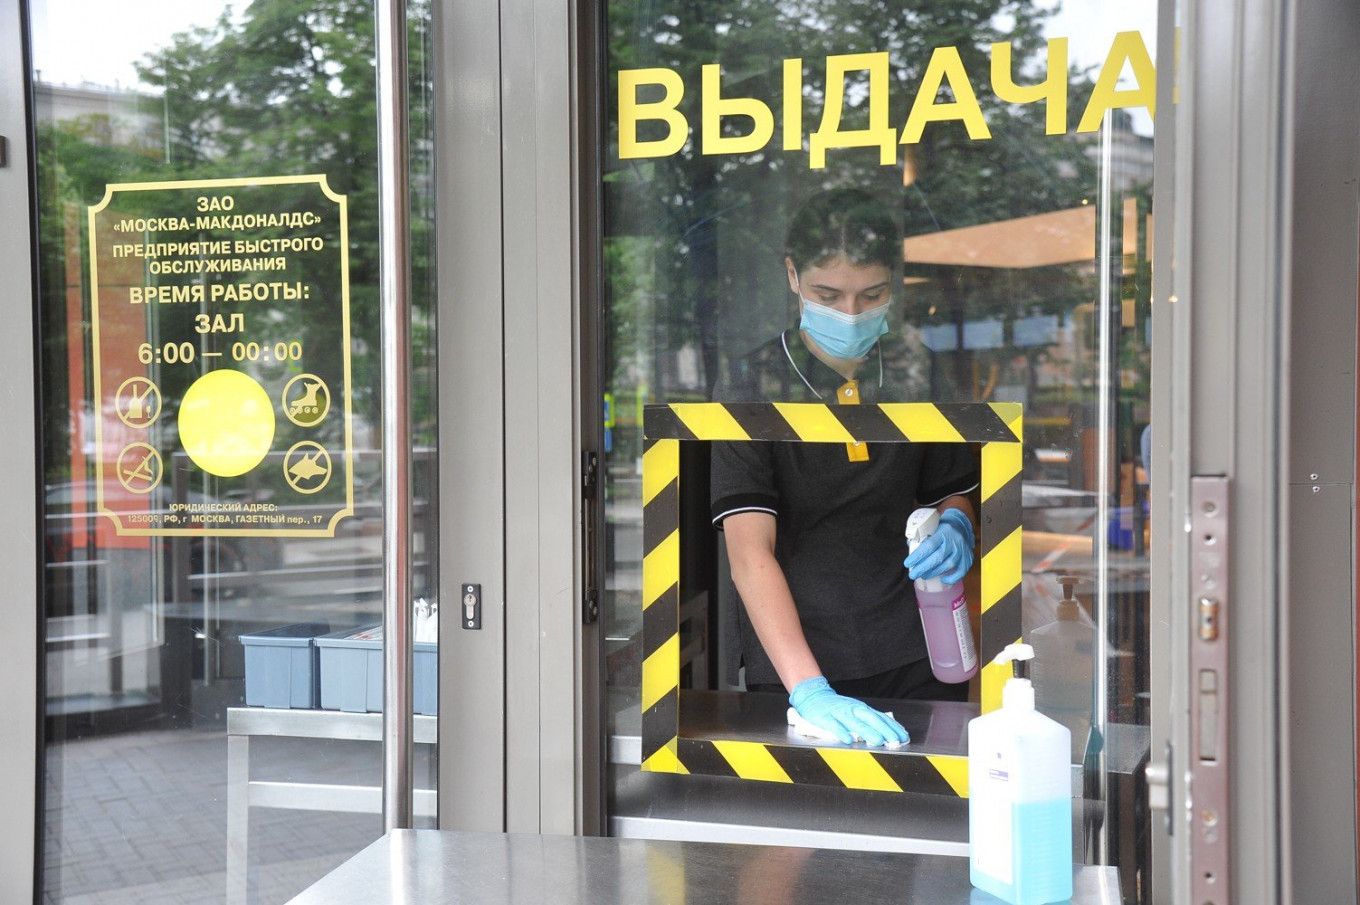 One Year On: How Russia’s Coronavirus Lockdown Hit the Economy